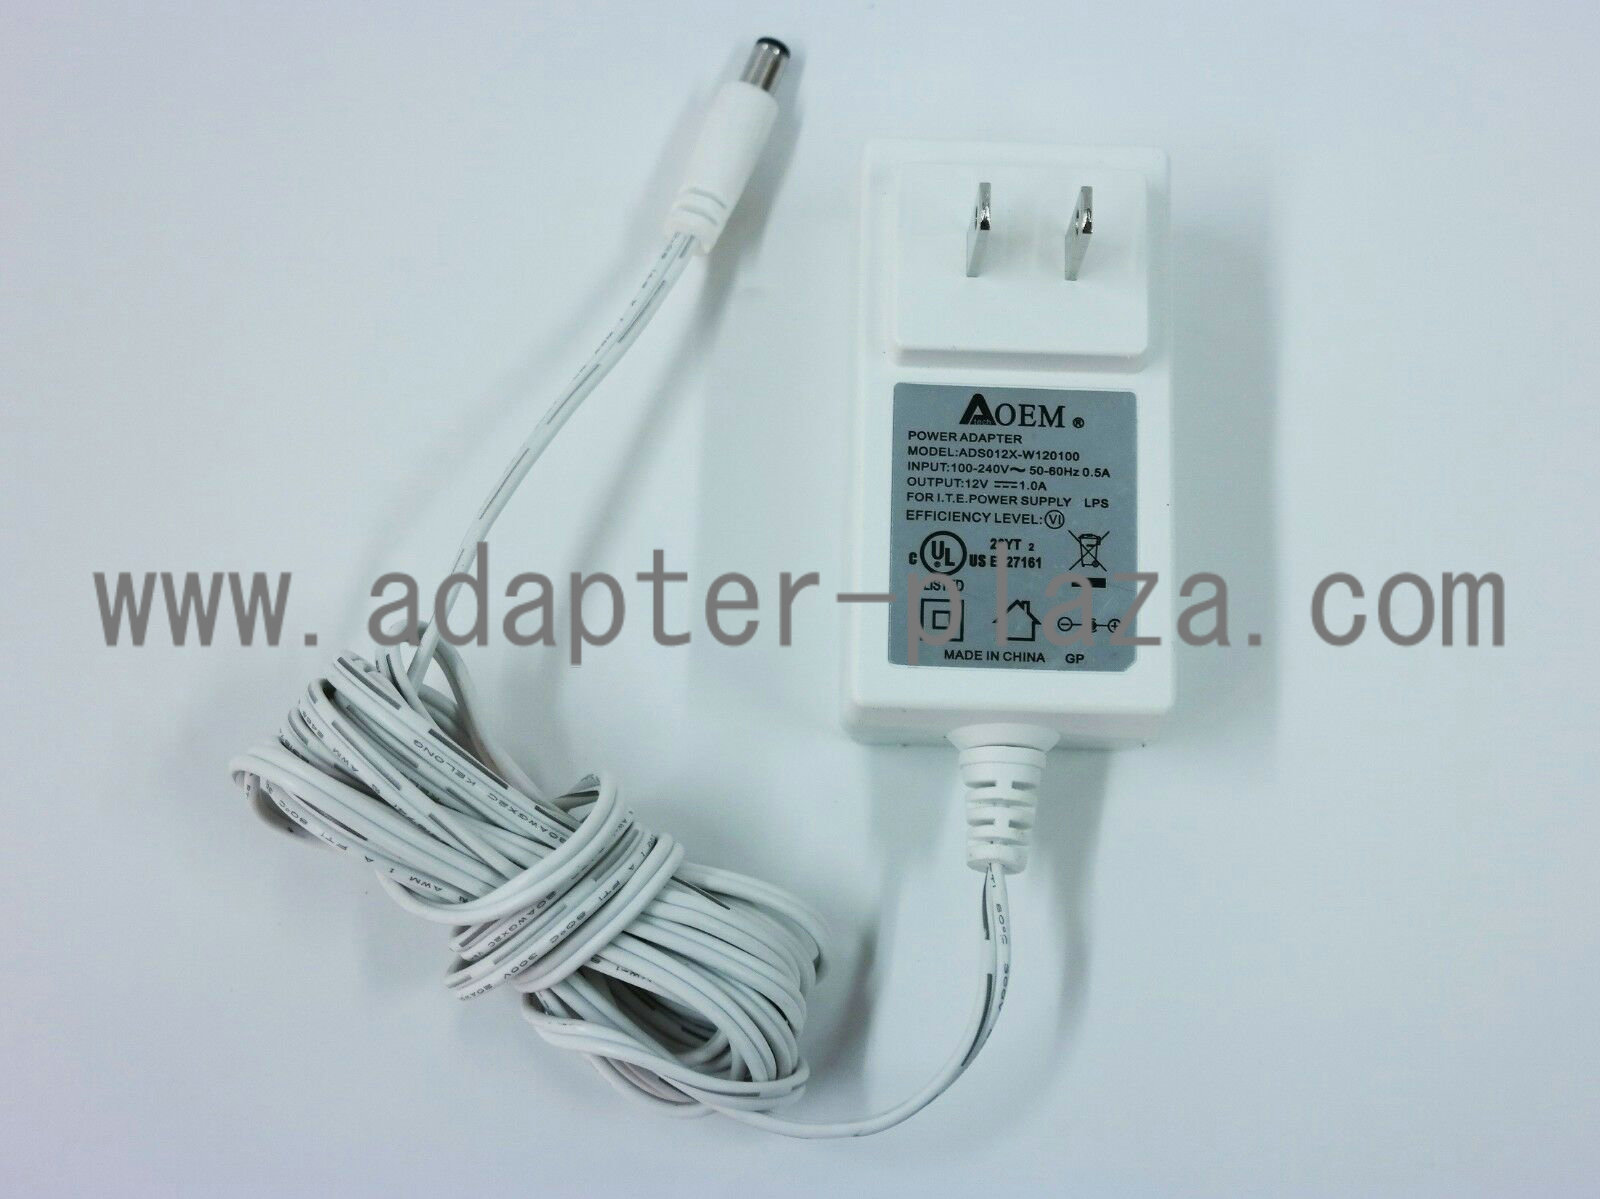 New ADSO12X-W120100 12V 1.0A AC Adapter FOR I.T.E.Power Supply